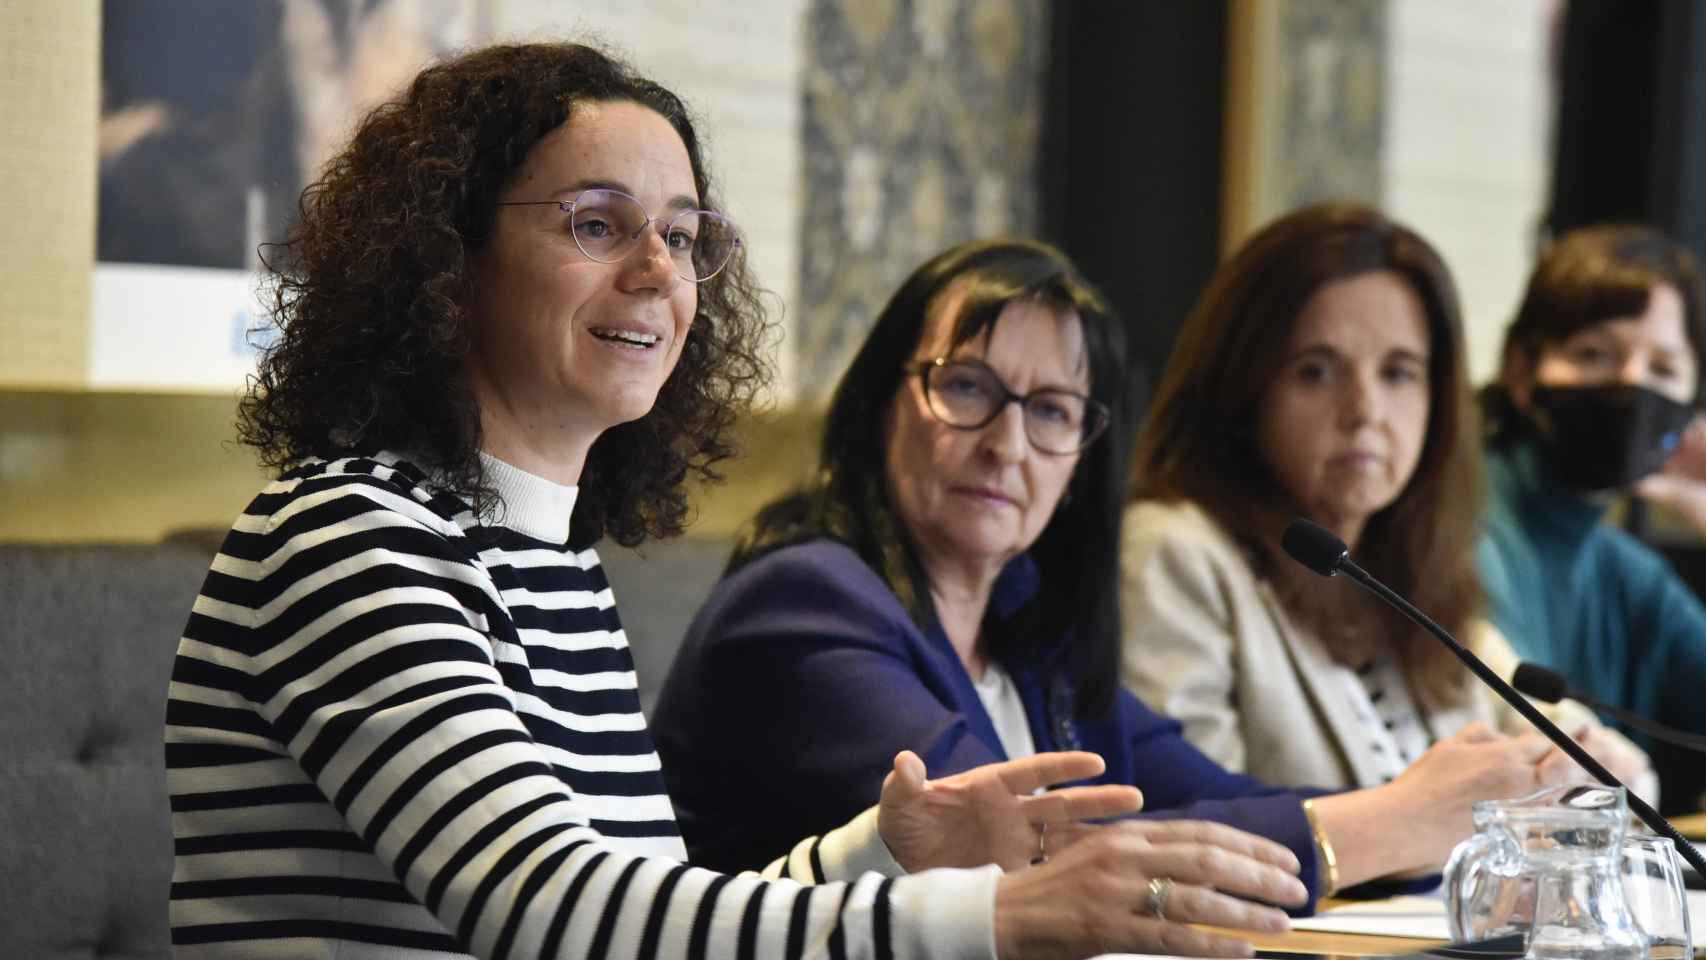 Anna Vila, conservadora científica de la Fundación ”la Caixa” y Elisa Durán, directora general adjunta de la Fundación ”la Caixa”.